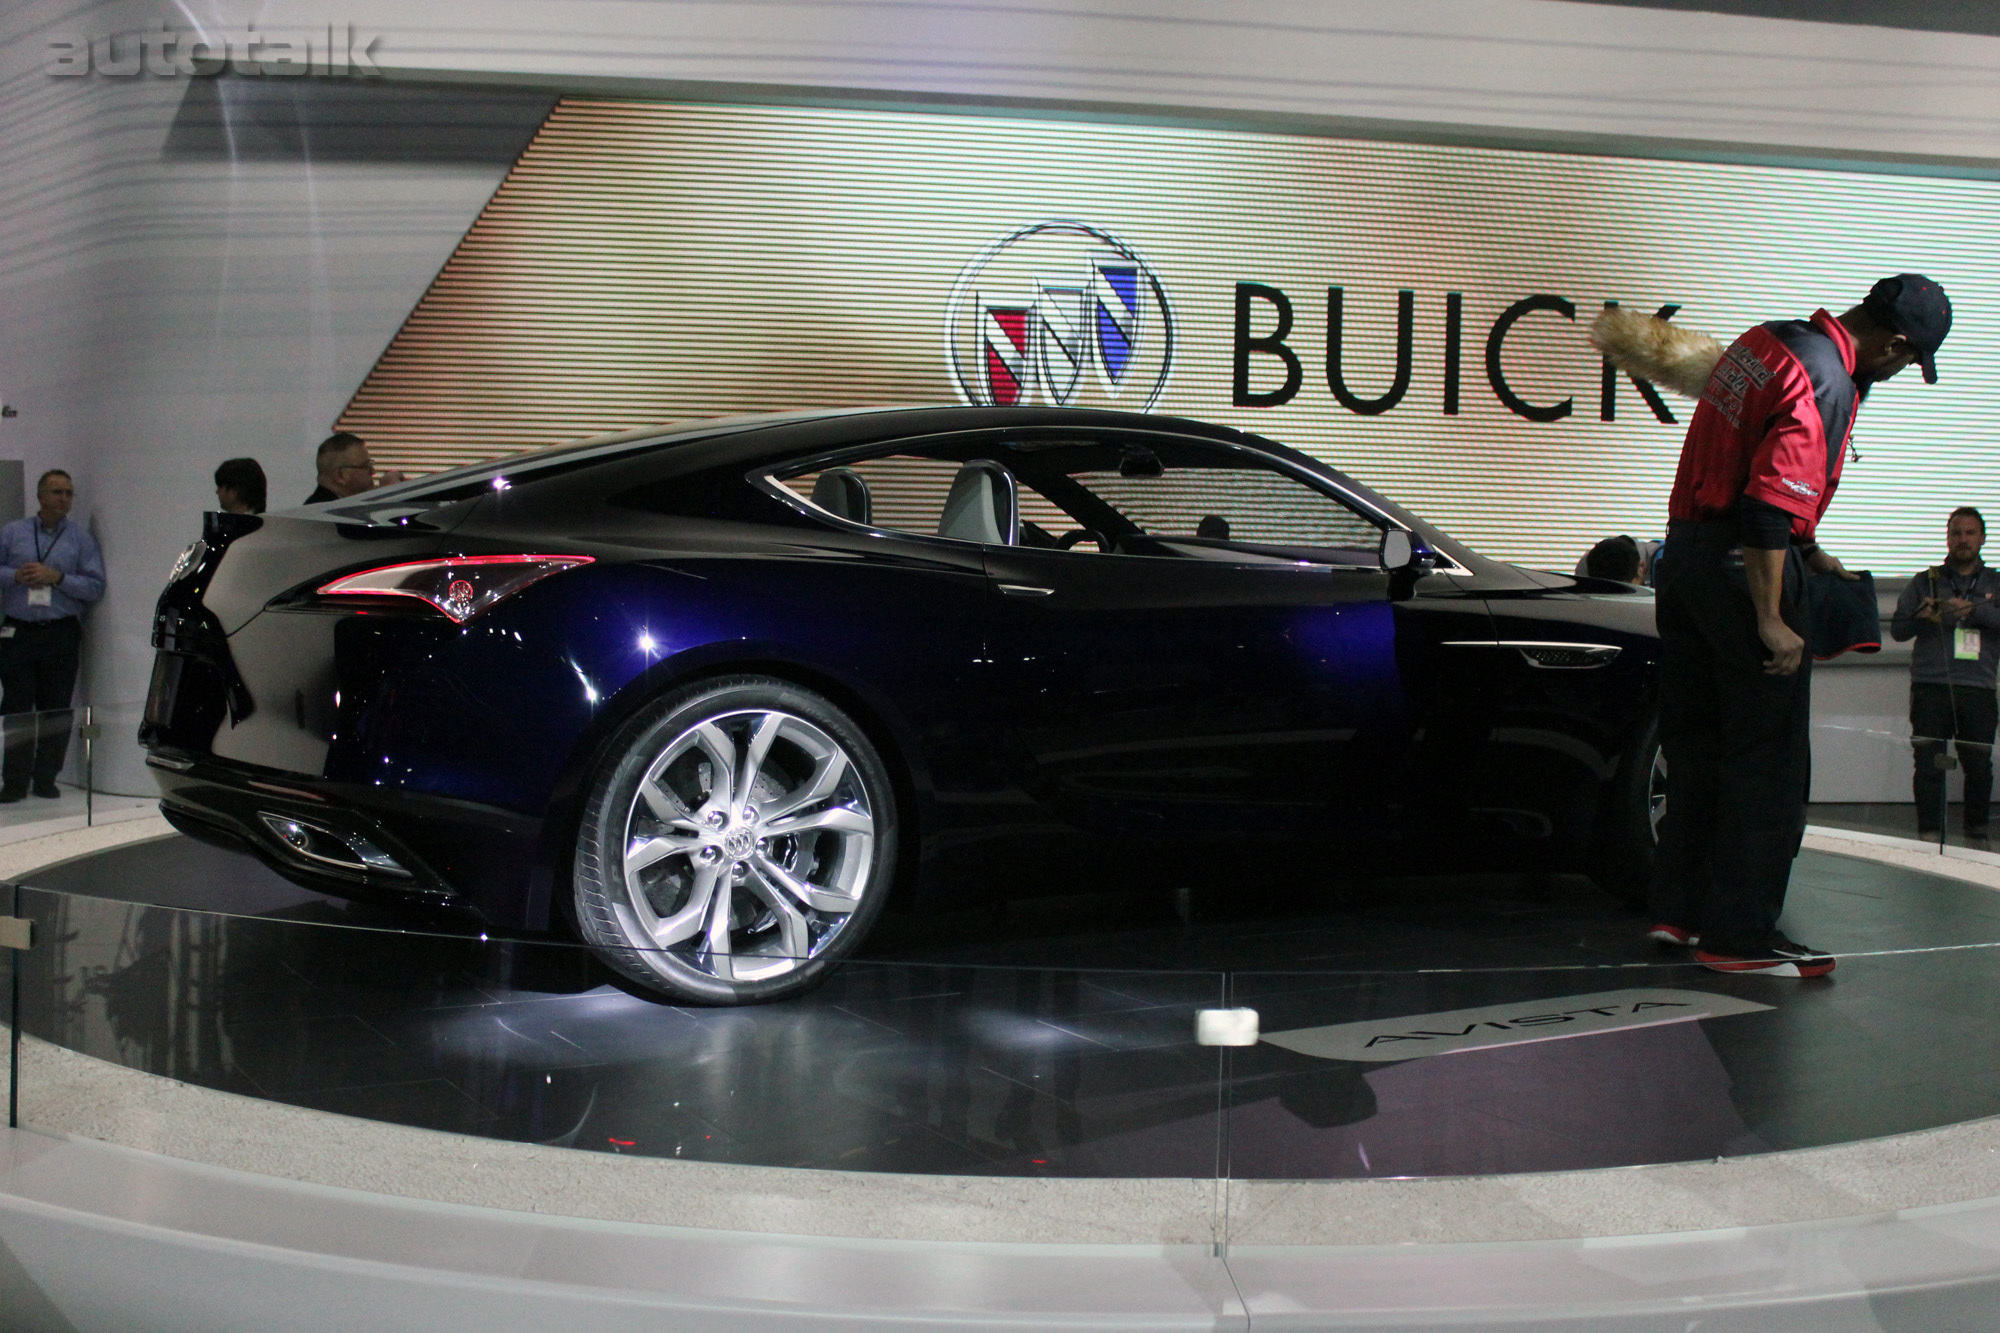 Buick at 2016 NAIAS